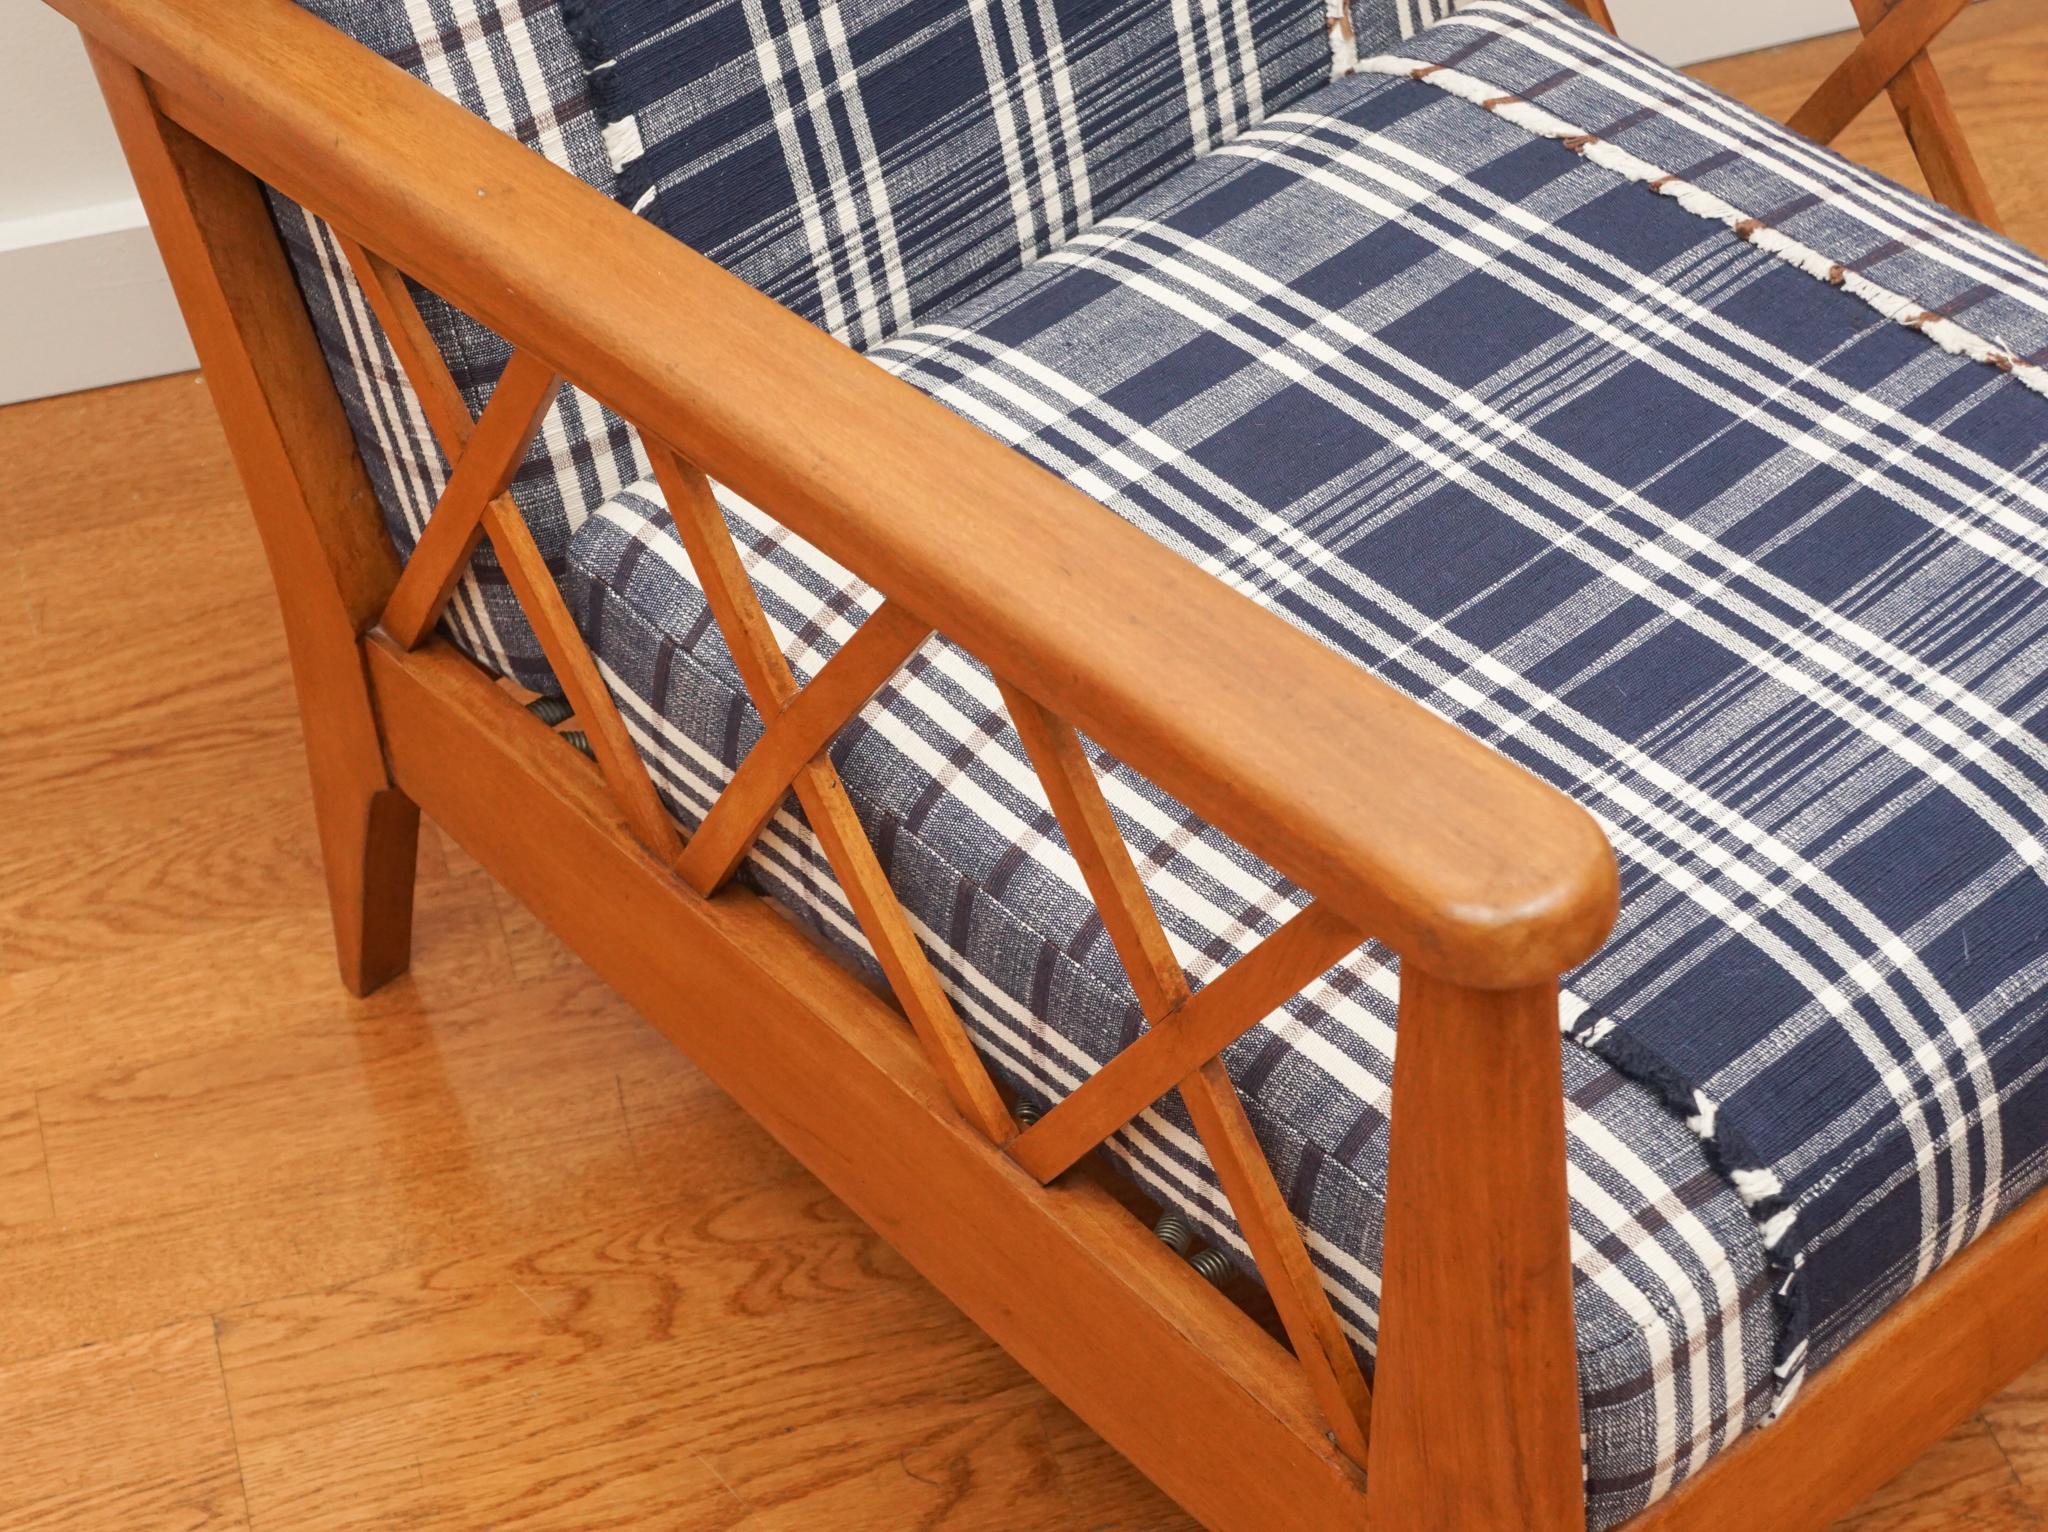 Les lignes épurées et la structure ouverte de ce fauteuil moderniste français avec coussins détachés conviennent parfaitement à une utilisation dans des pièces traditionnelles ou modernes.  Le fauteuil présente une patine vieillie de couleur miel et